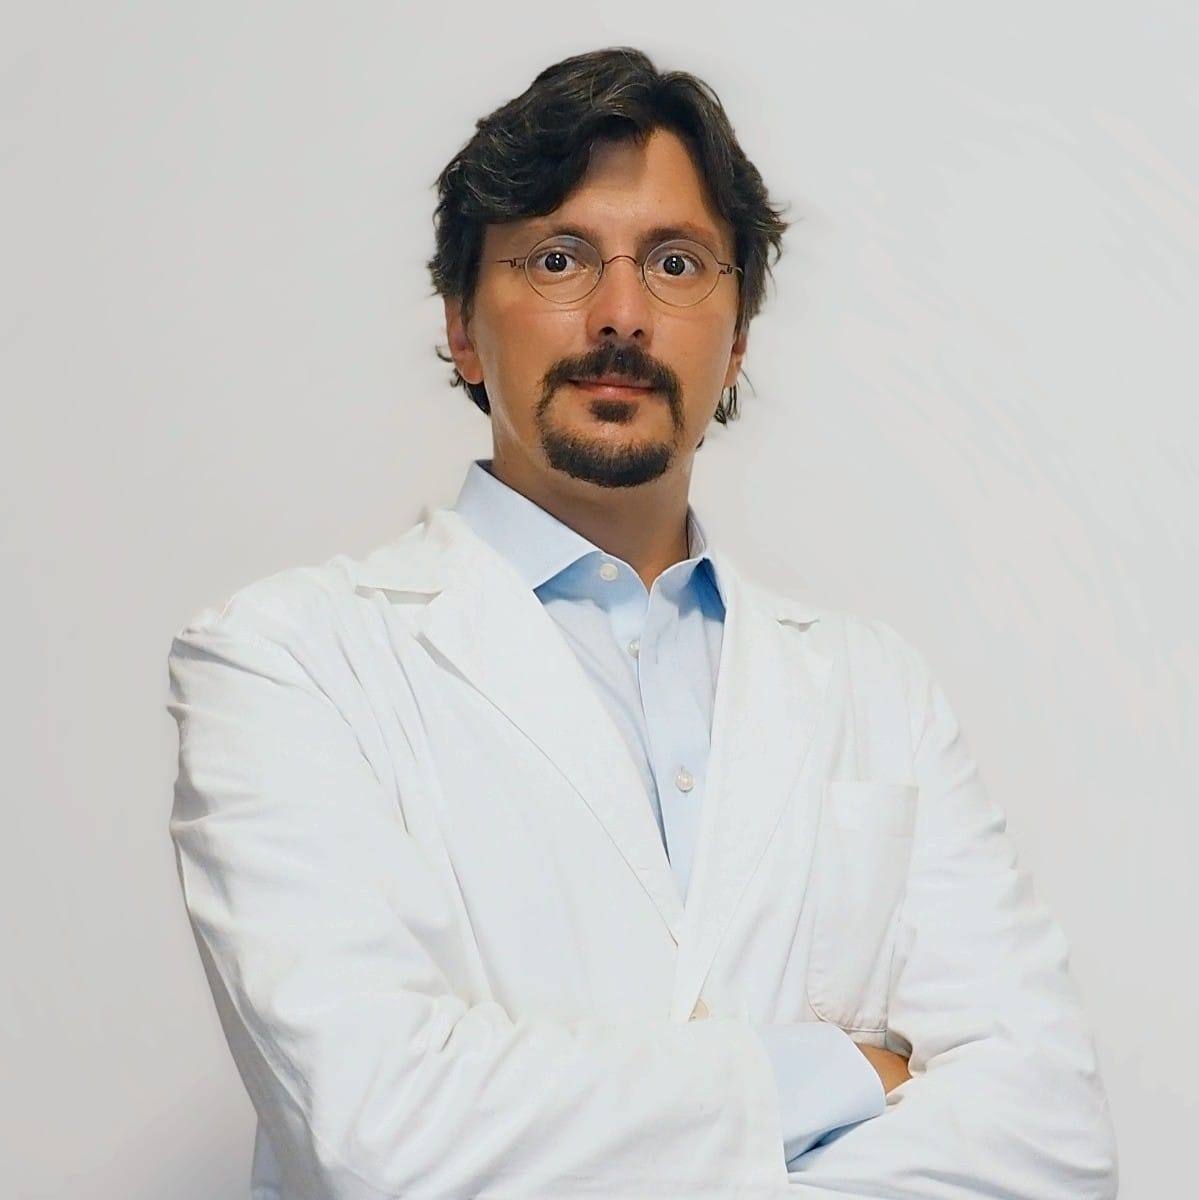 Dott. Guglielmo Melloni